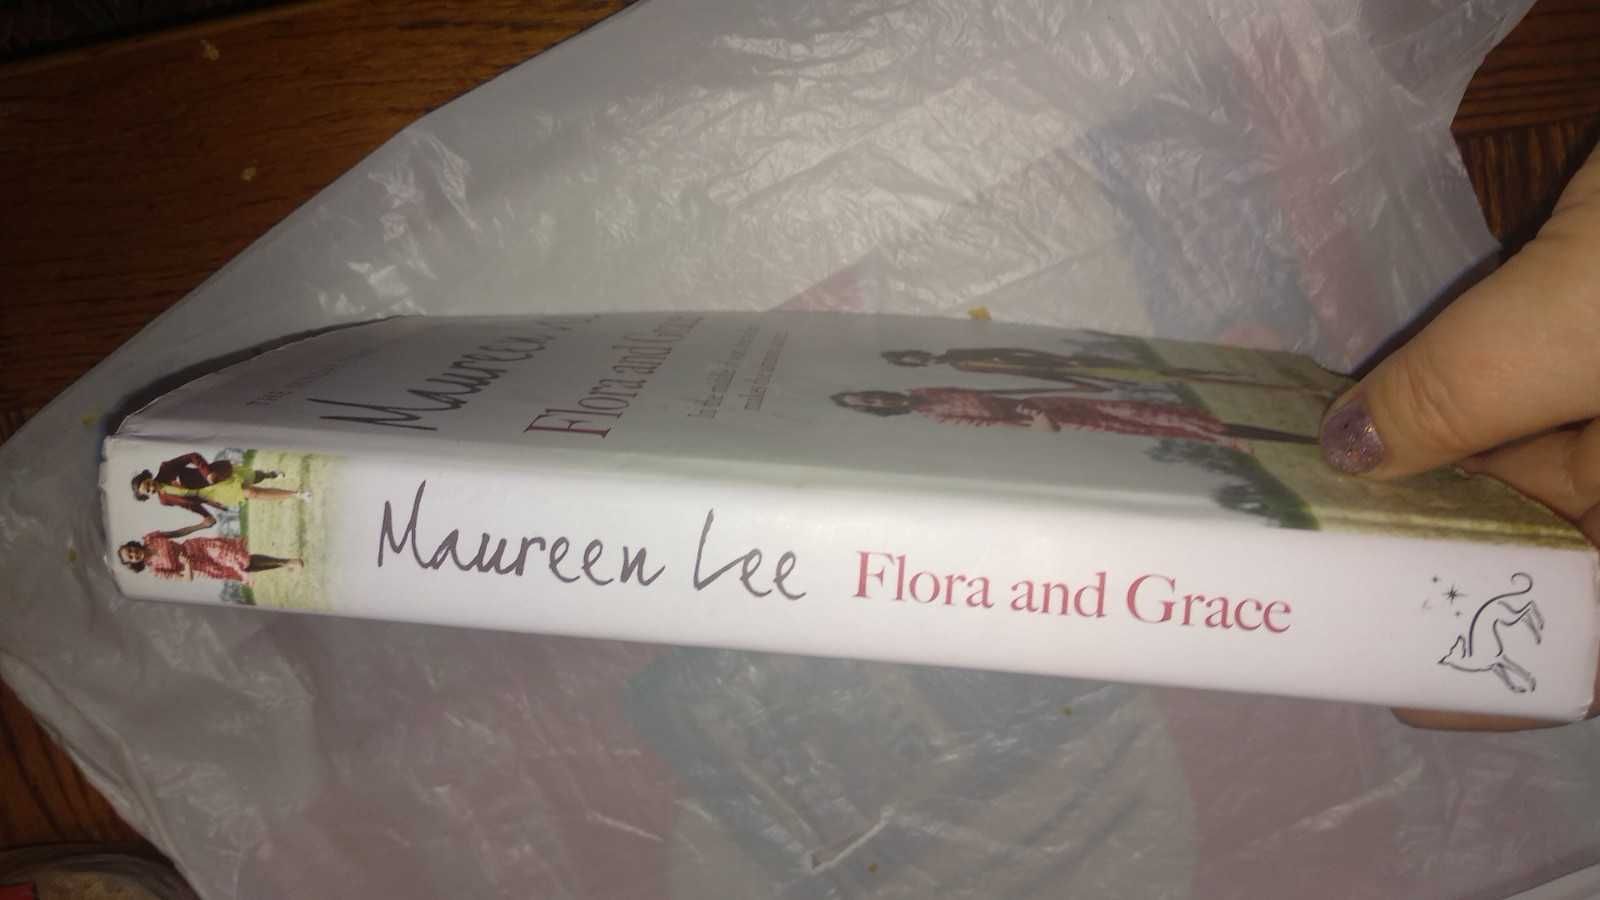 Flora and Grace Maureen Lee книга англиский исторический роман